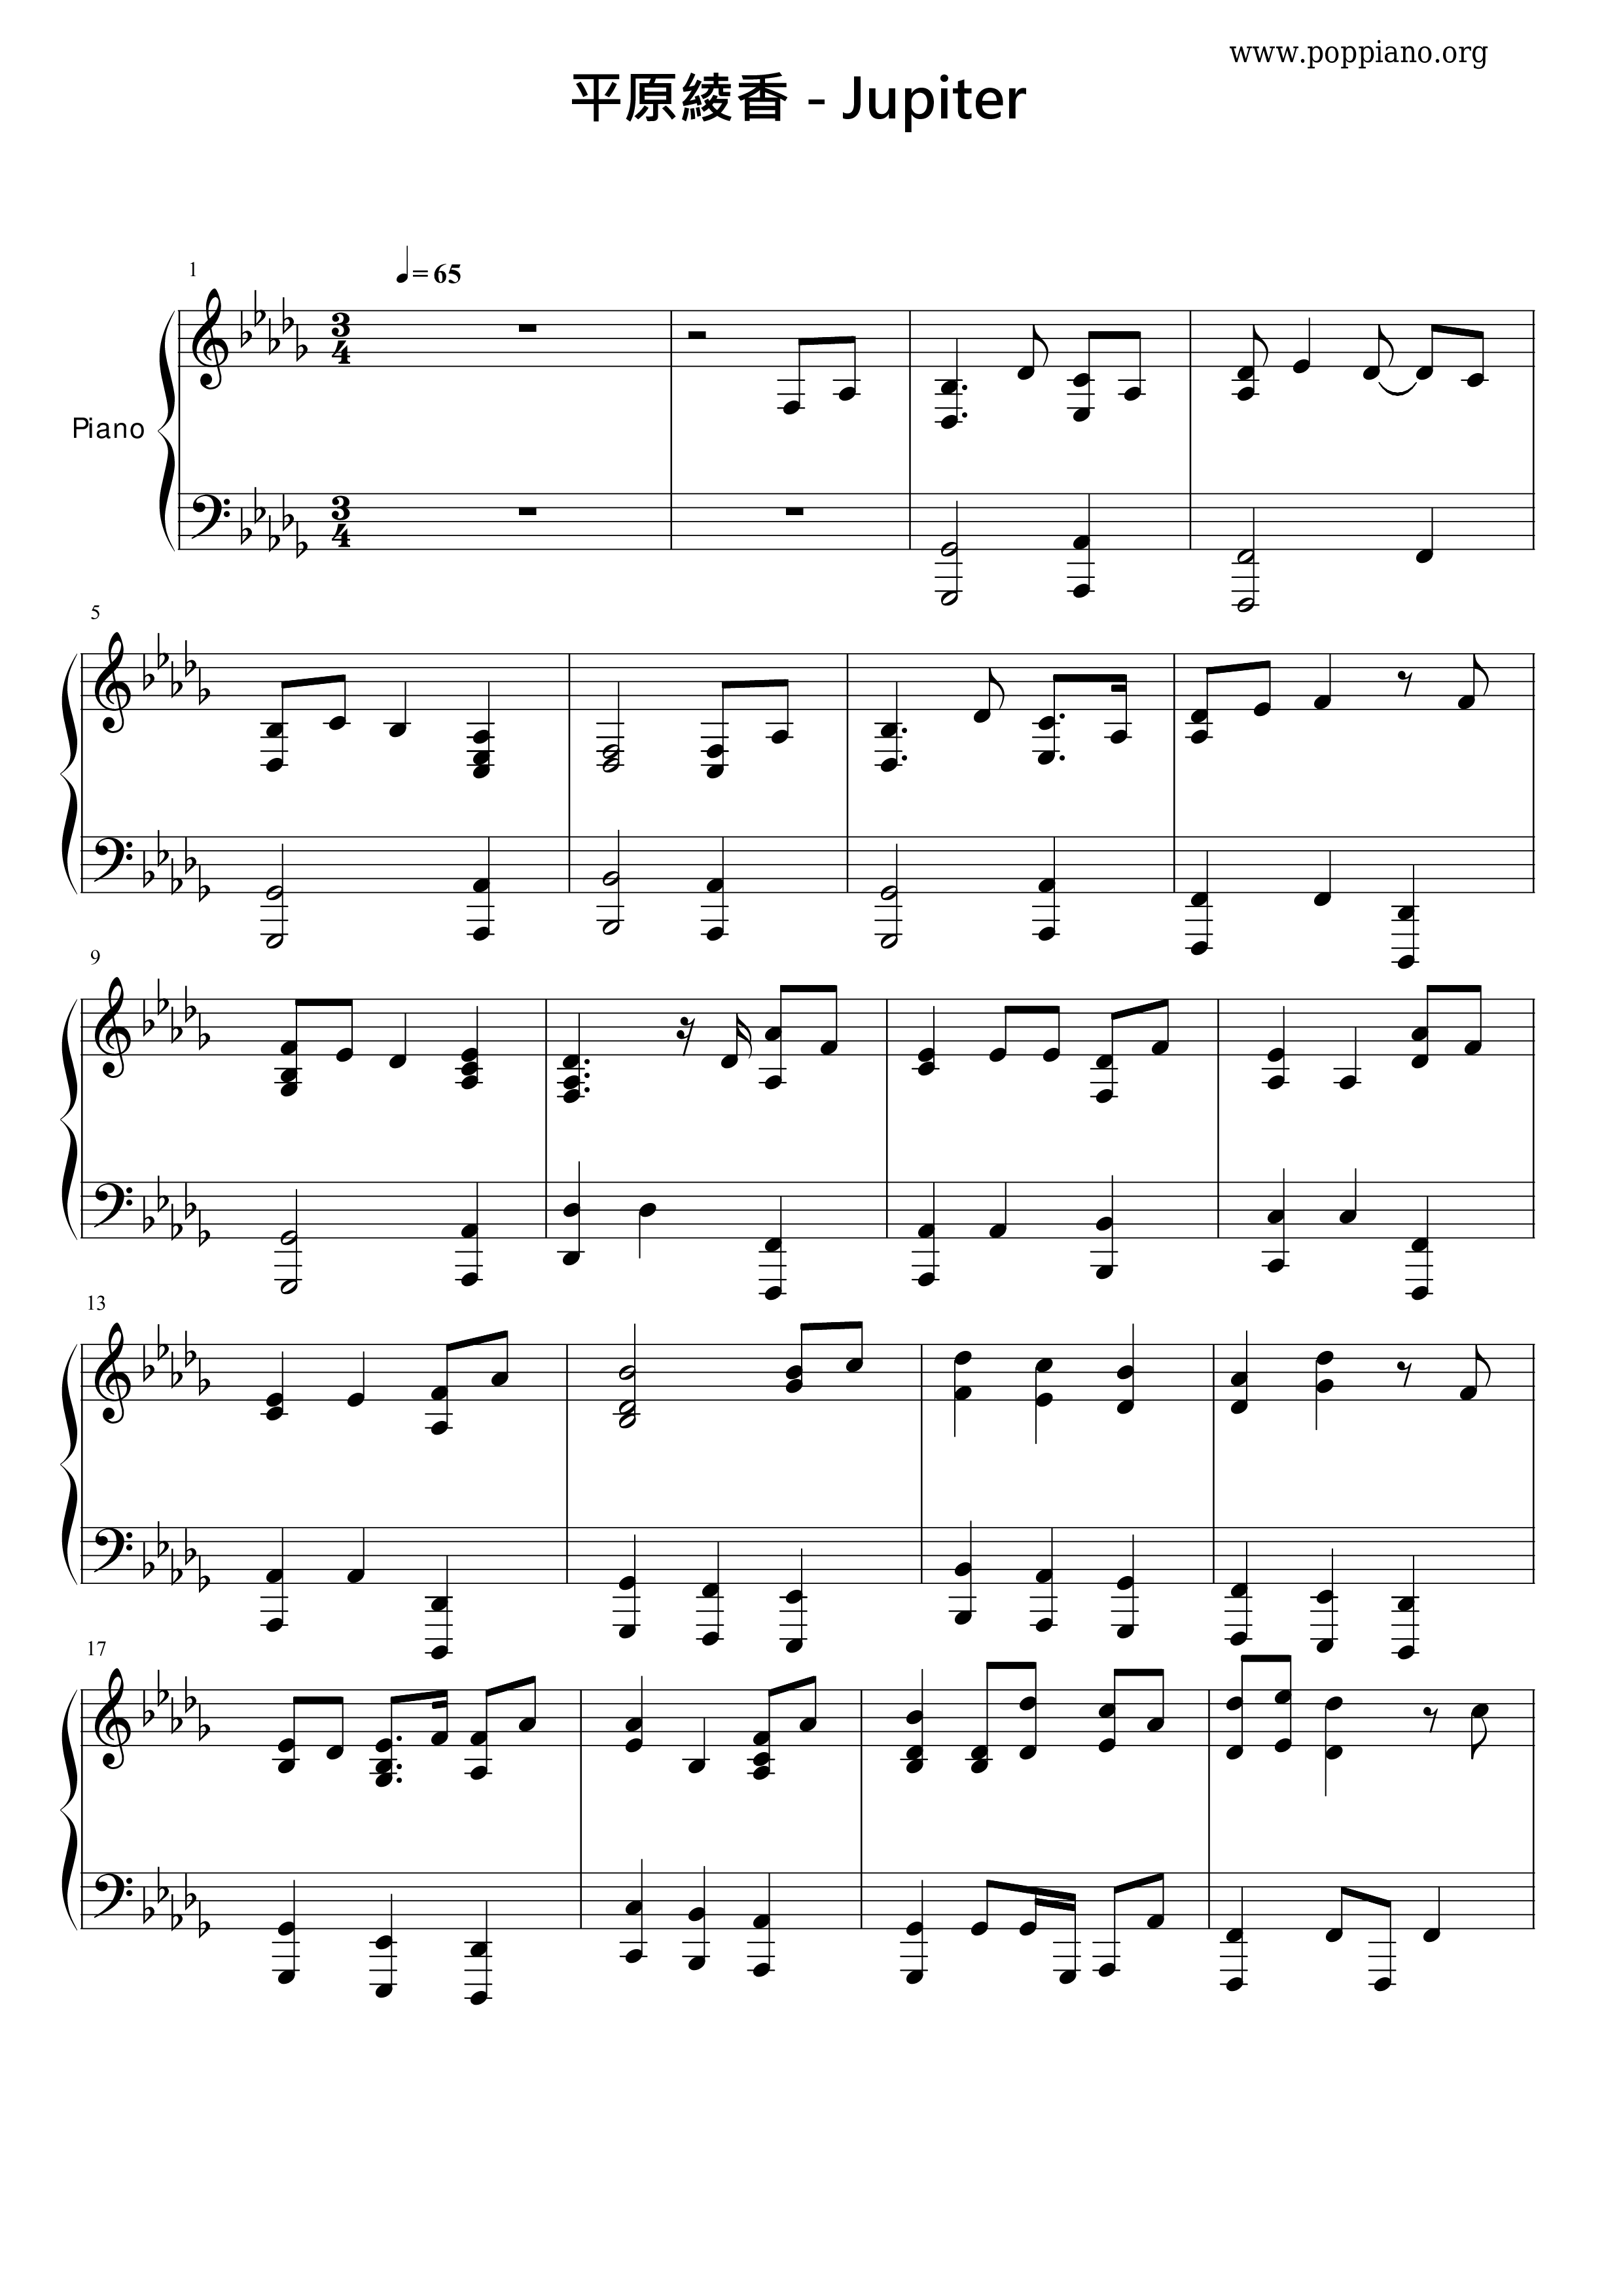 Jupiter (ジュピター)ピアノ譜